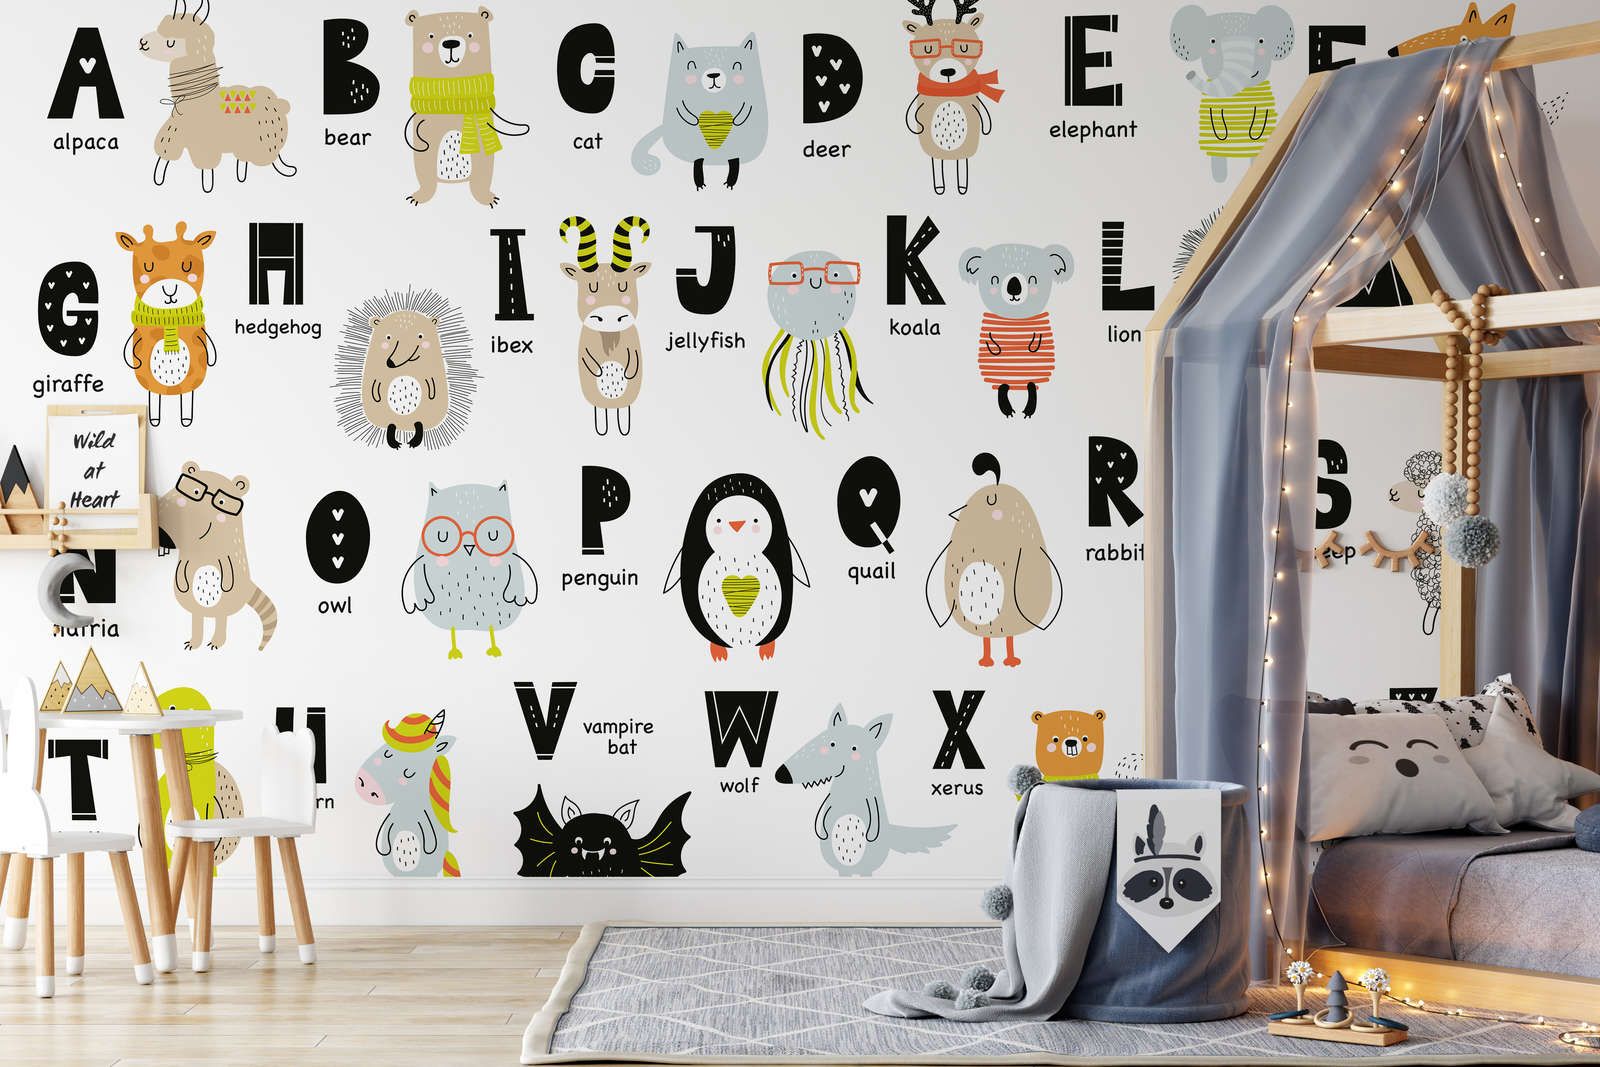             Digital behang Alfabet met dieren en dierennamen - Glad & mat vlies
        